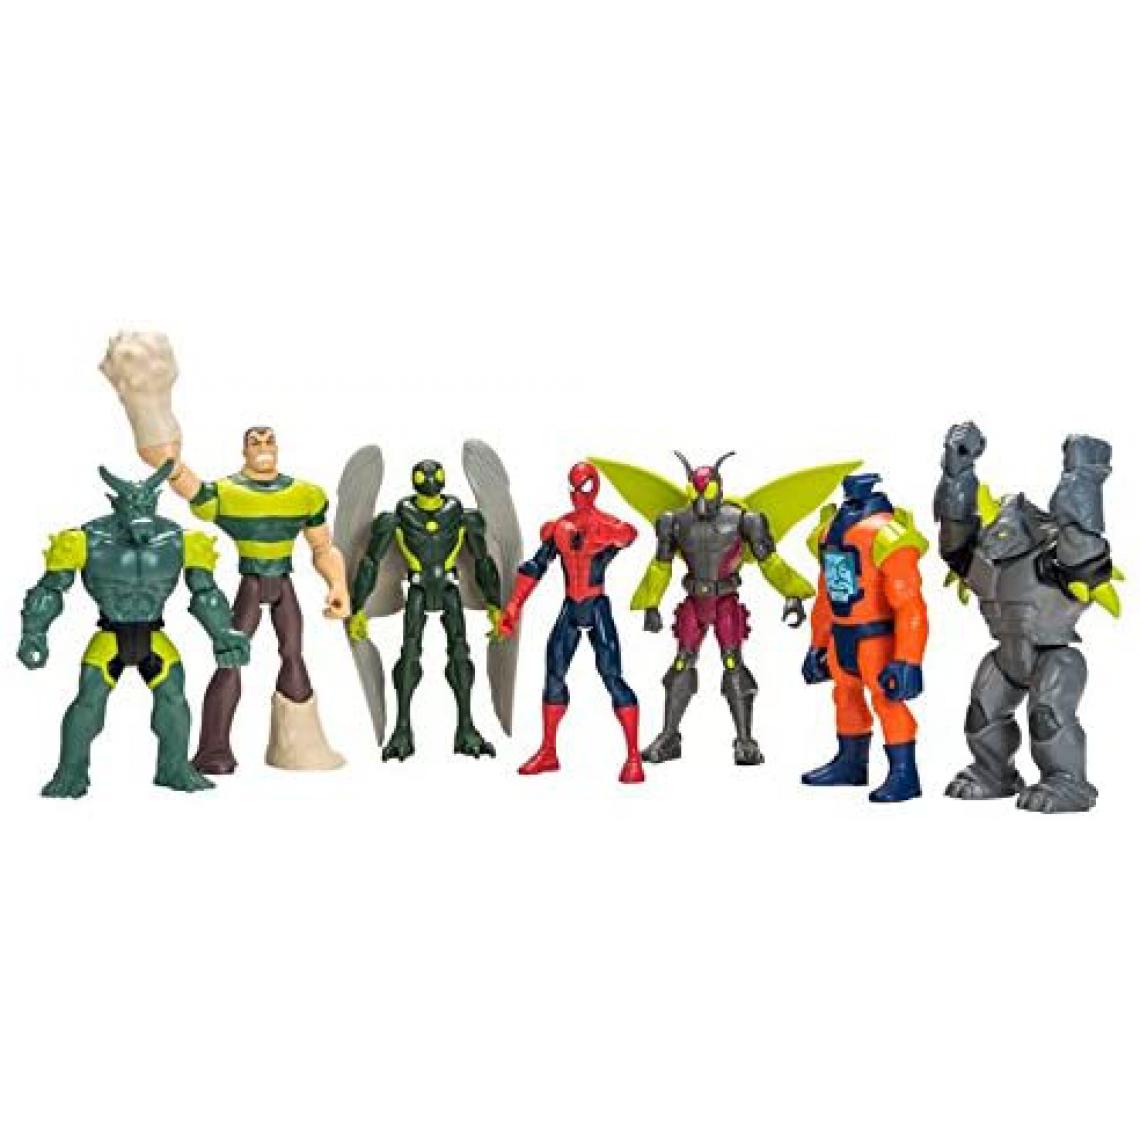 Hasbro - 6 Figurines méchants et 1 figurine Spider-Man de 15 cm - Films et séries